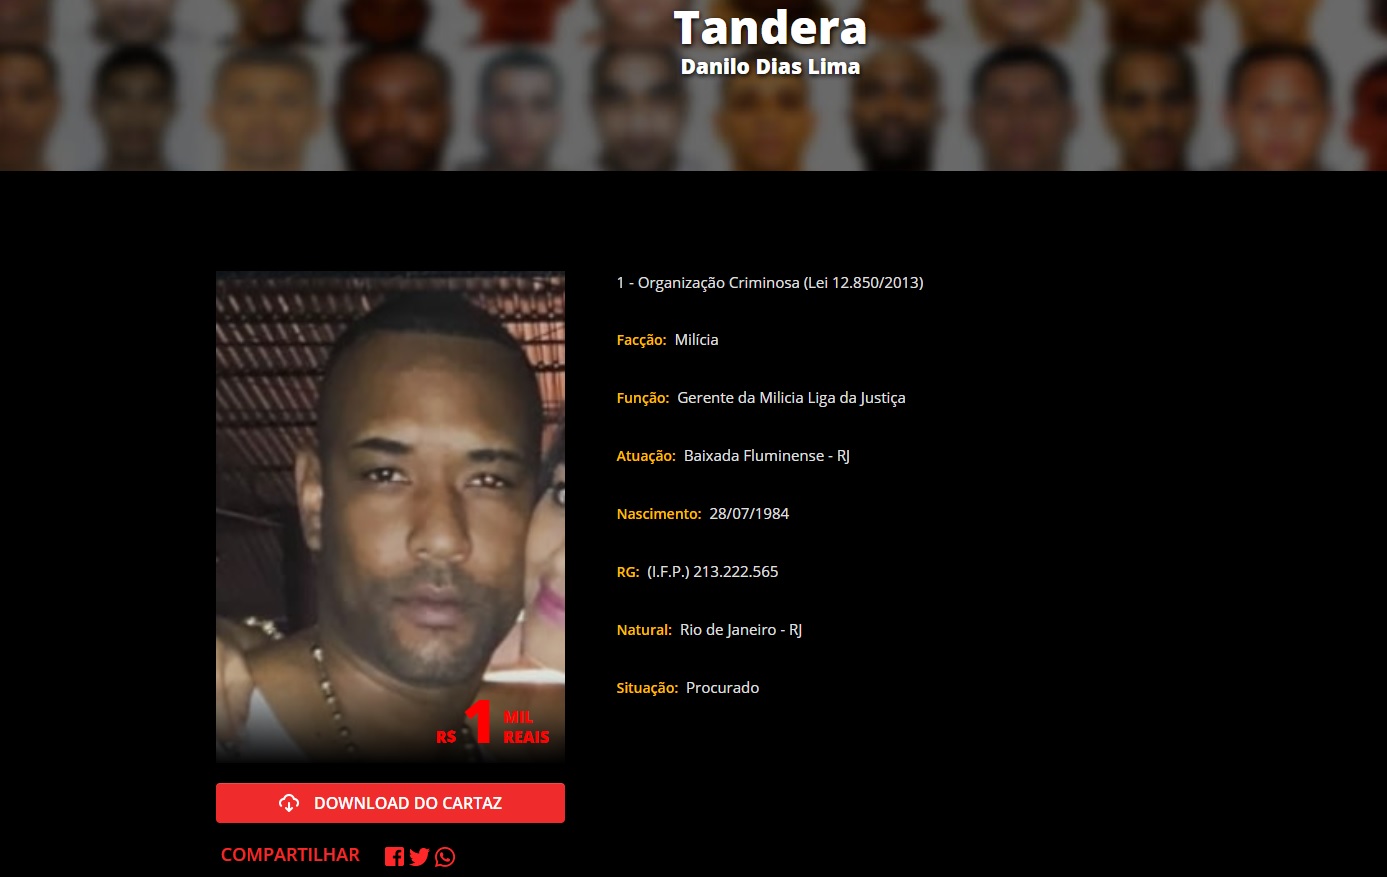 Principal alvo da ação é Danilo Dias Lima, conhecido como Tandera